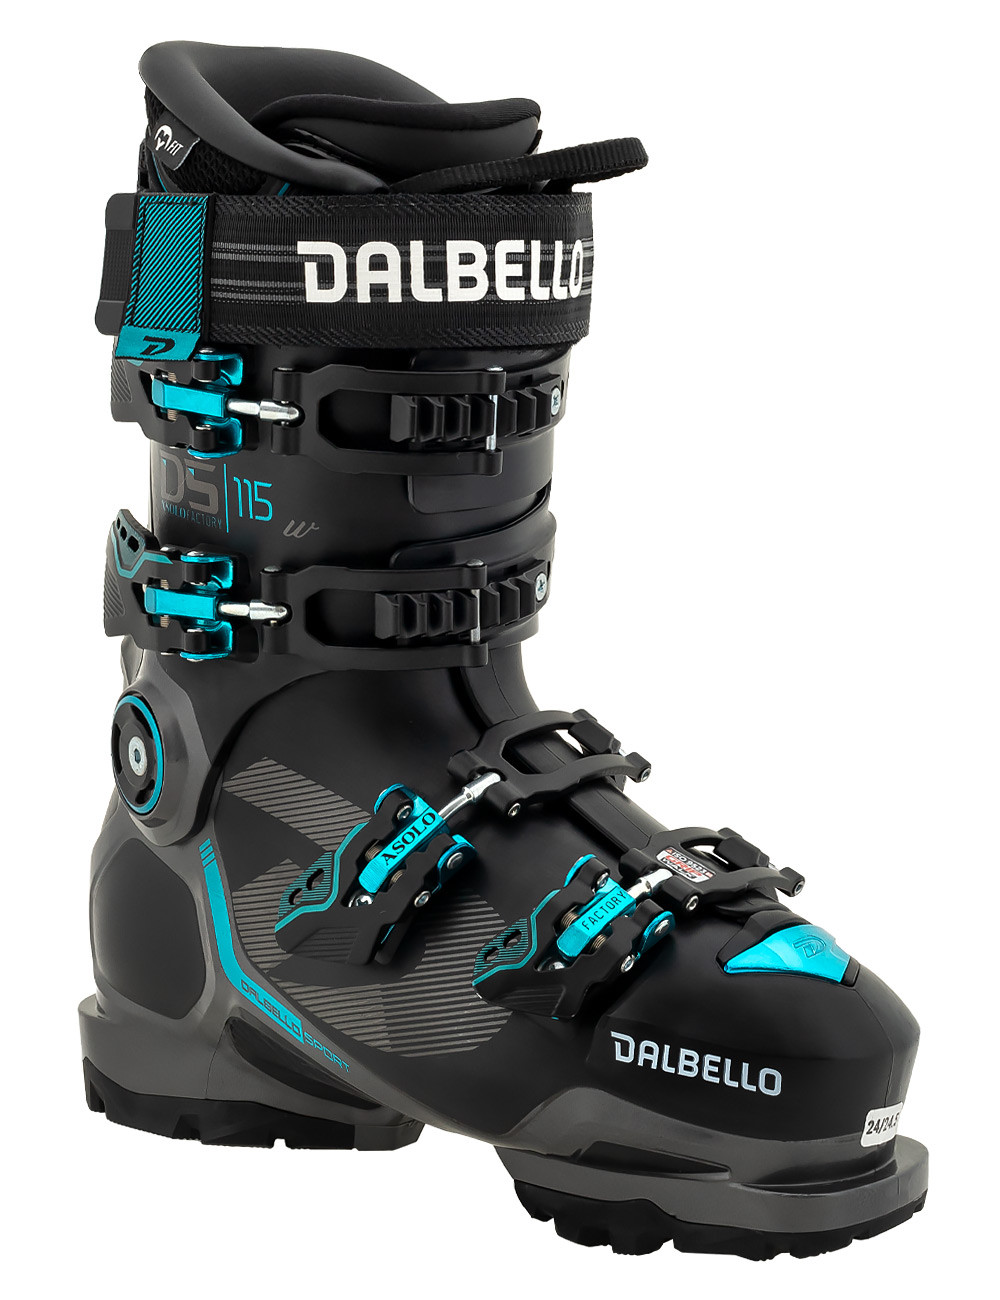 Buty narciarskie damskie DALBELLO ASOLO FACTORY 115 W z GRIP WALK